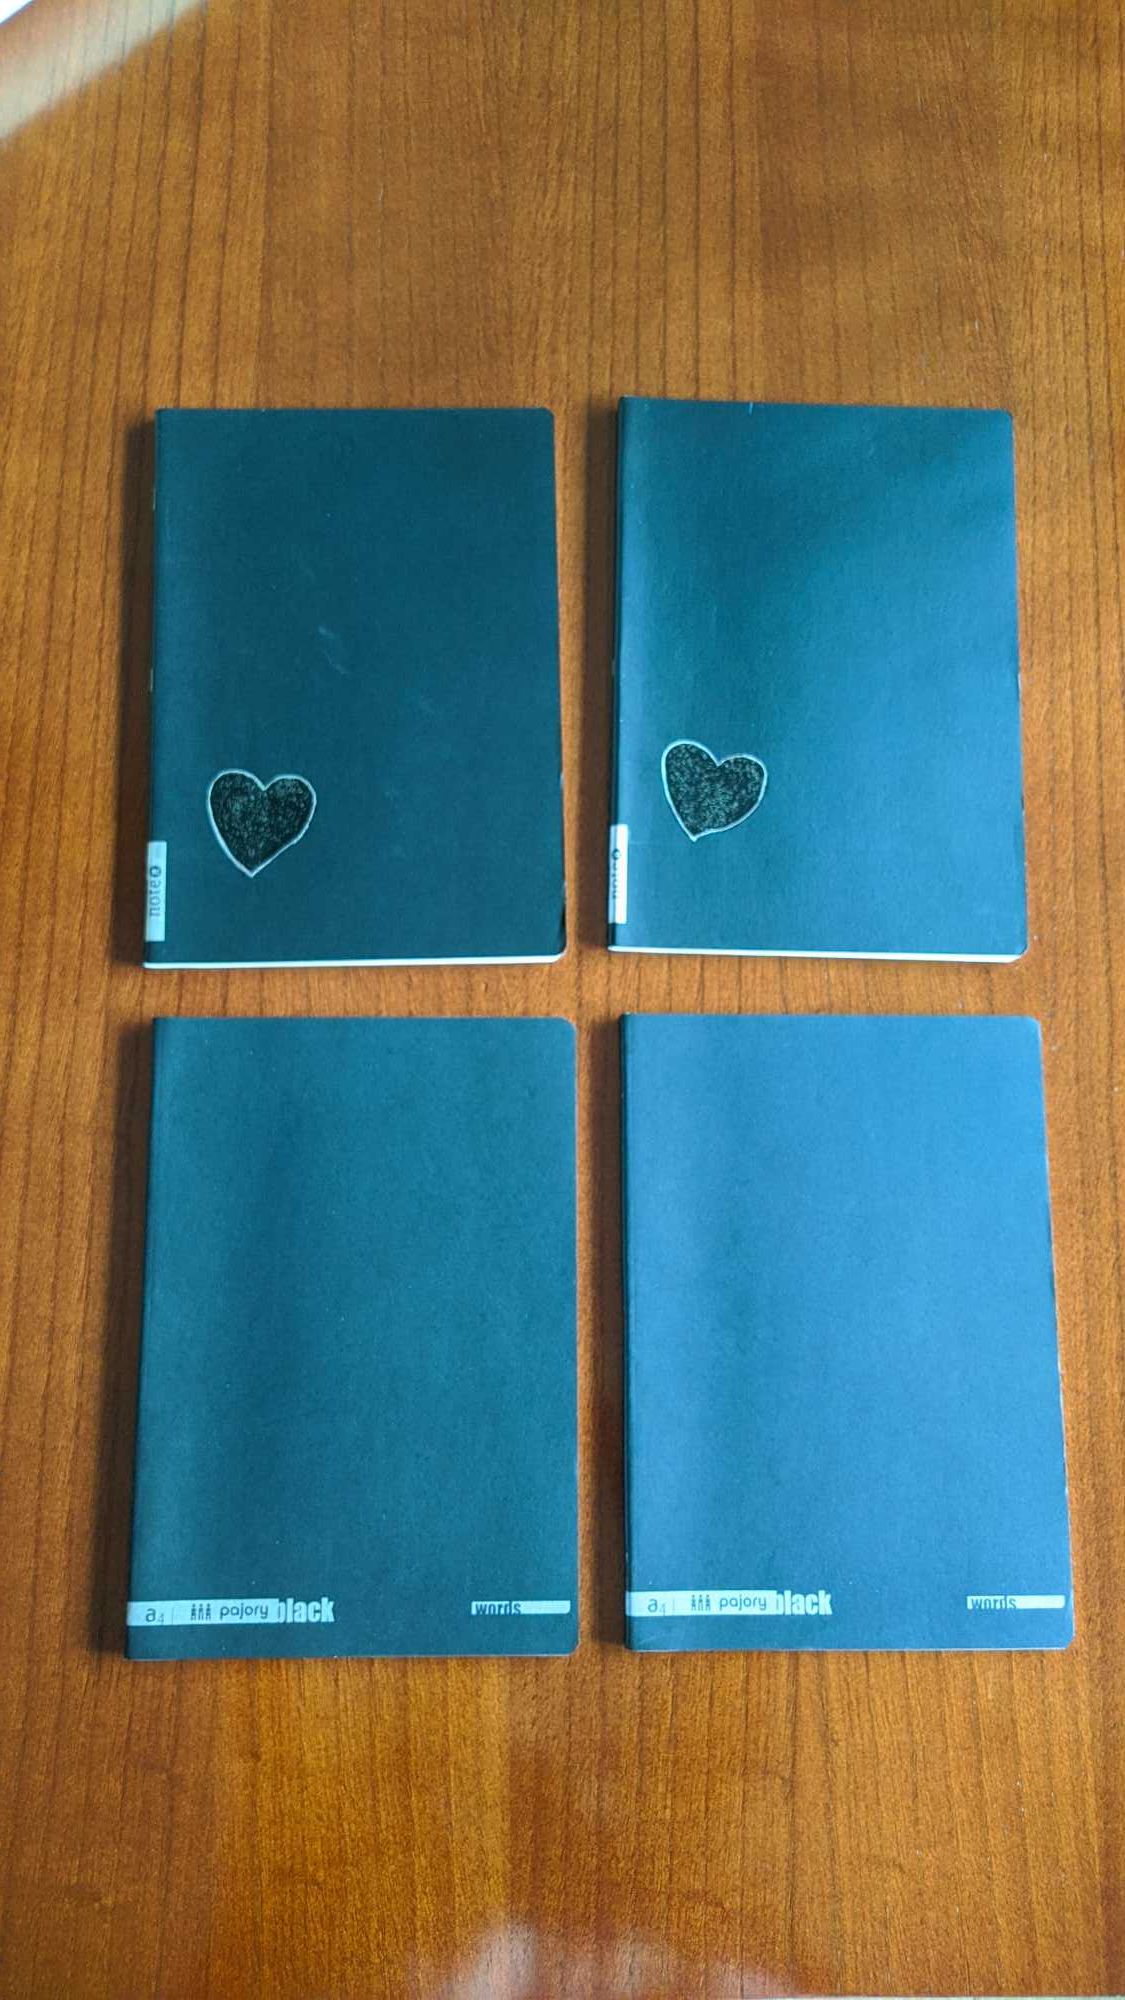 Cadernos A4 de capa preta Pajory e Note (NOVOS)